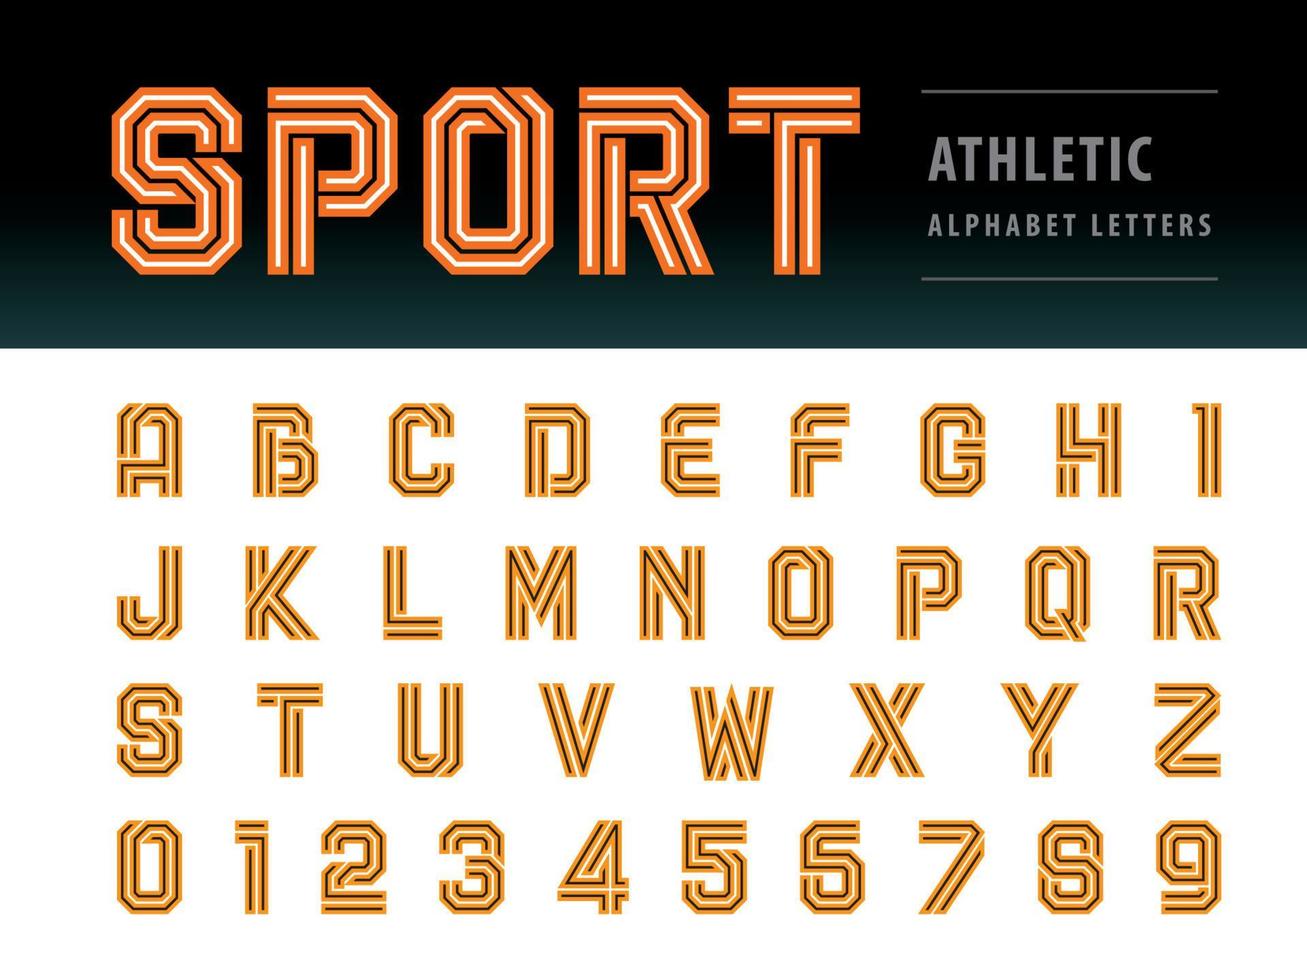 geometrische vetgedrukte lettertypetechnologie, sport, futuristische toekomst, vector van atletische Alfabetletters en cijfers